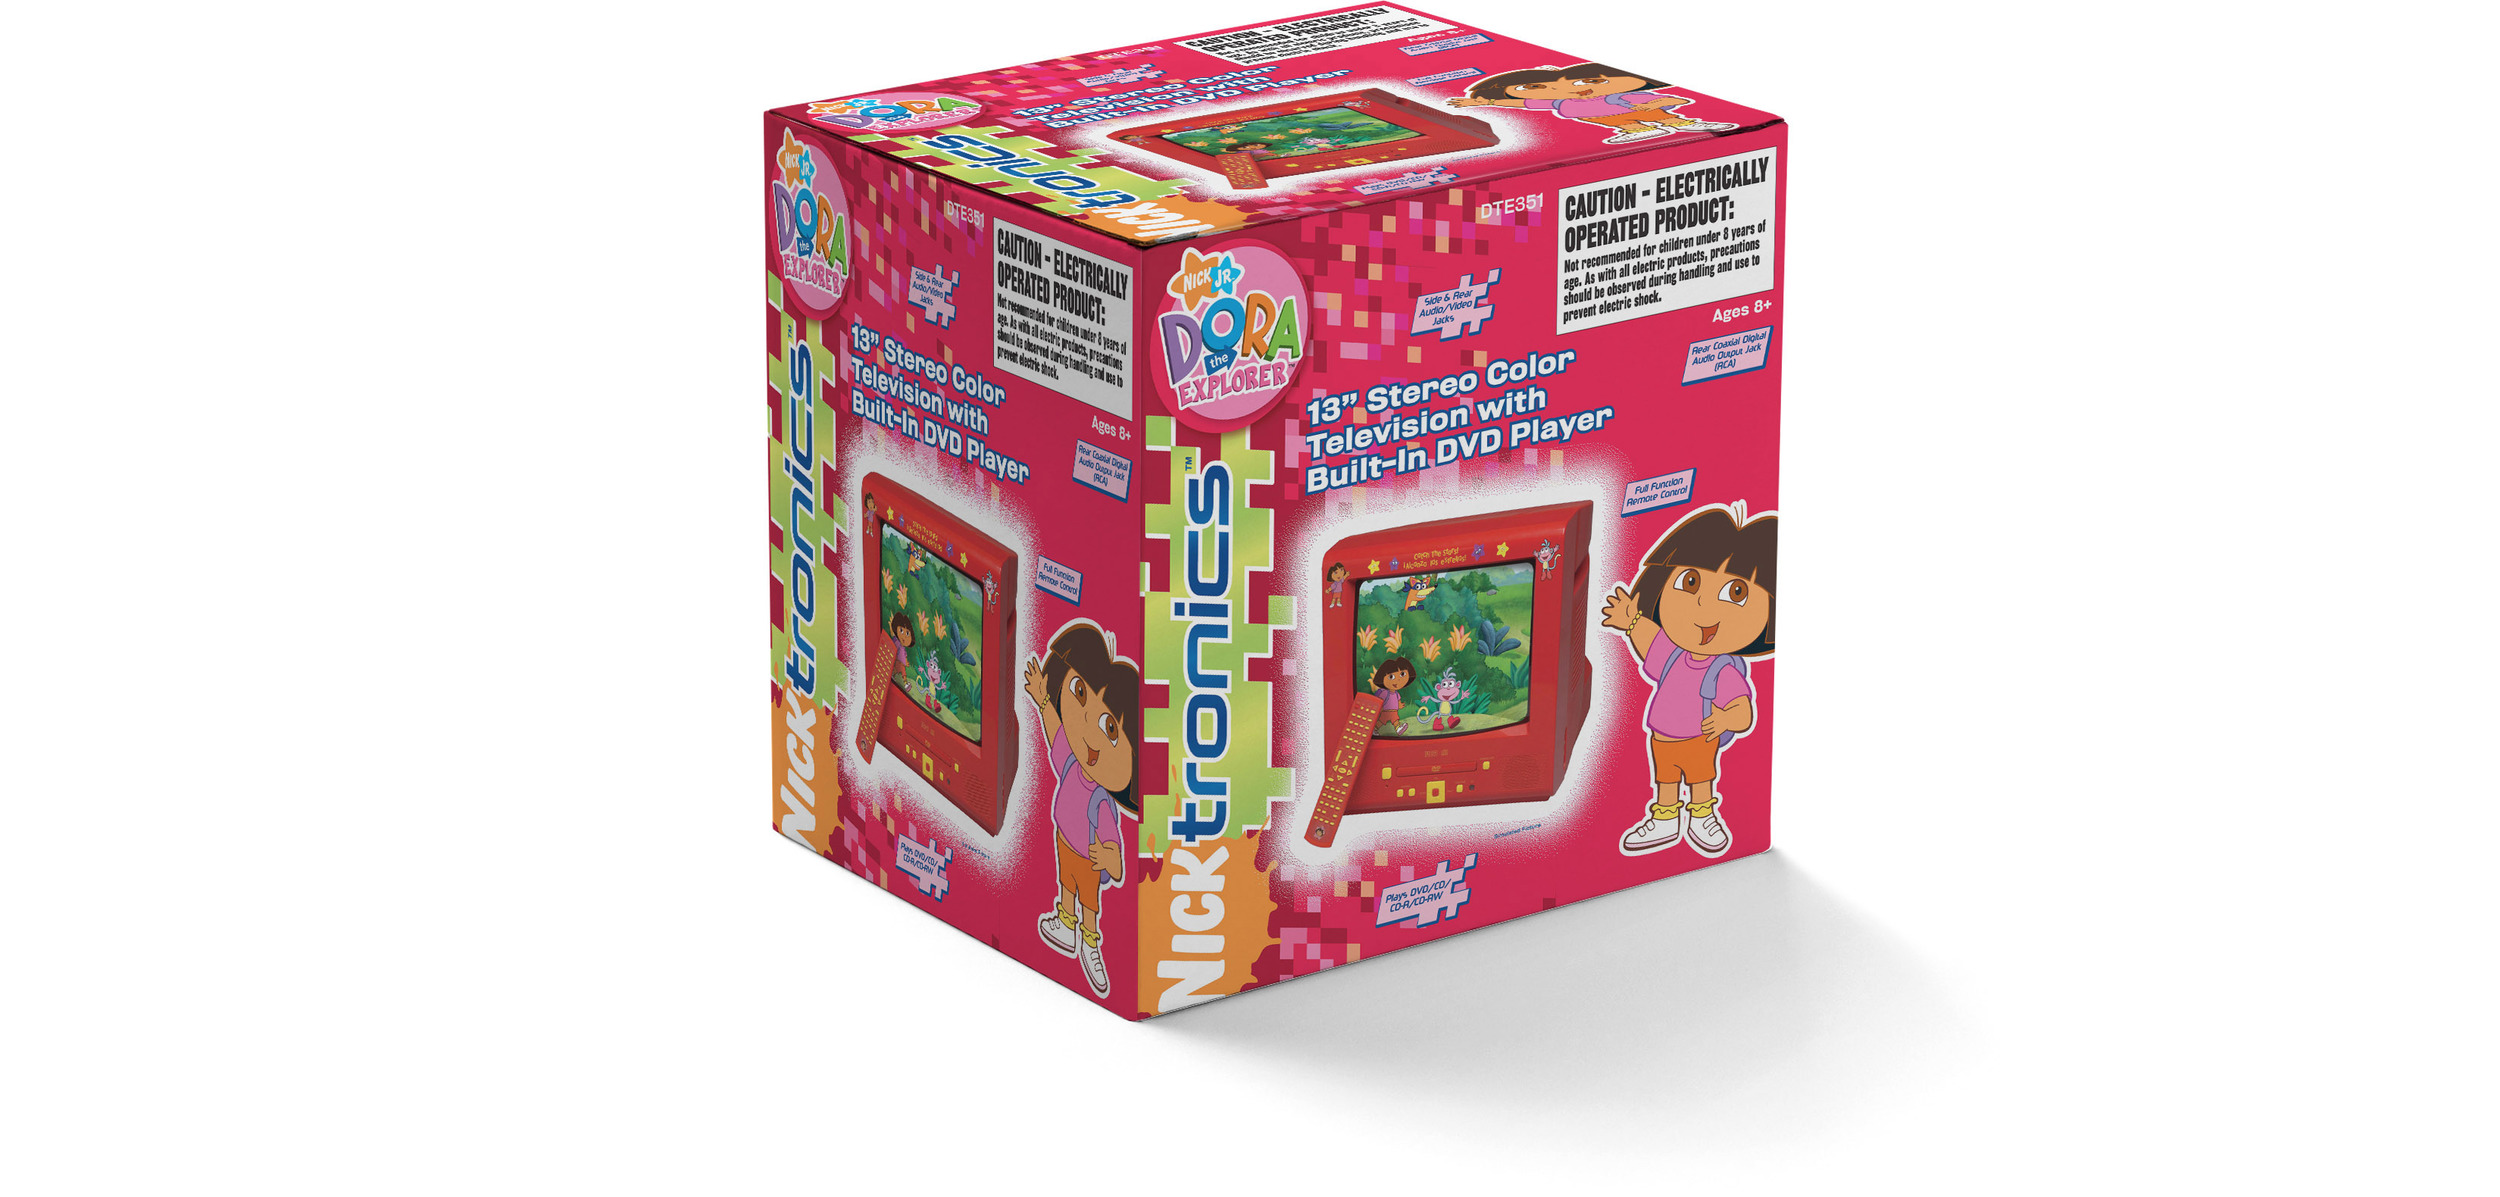 Nickelodeon_Dora TV Packaging_Mock Up.jpg